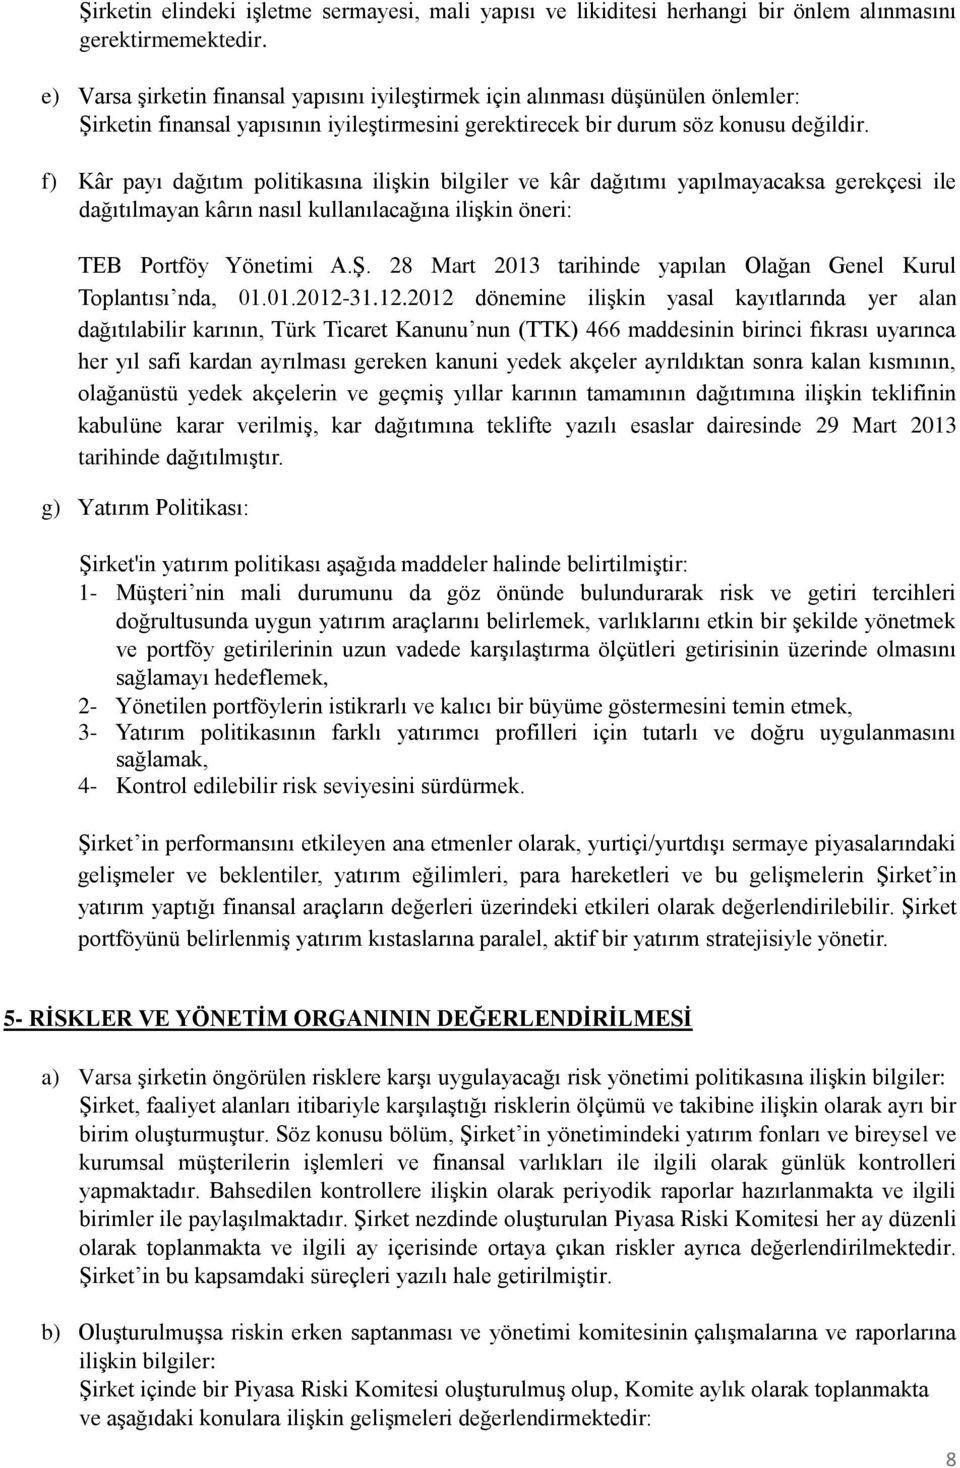 f) Kâr payı dağıtım politikasına ilişkin bilgiler ve kâr dağıtımı yapılmayacaksa gerekçesi ile dağıtılmayan kârın nasıl kullanılacağına ilişkin öneri: TEB Portföy Yönetimi A.Ş.